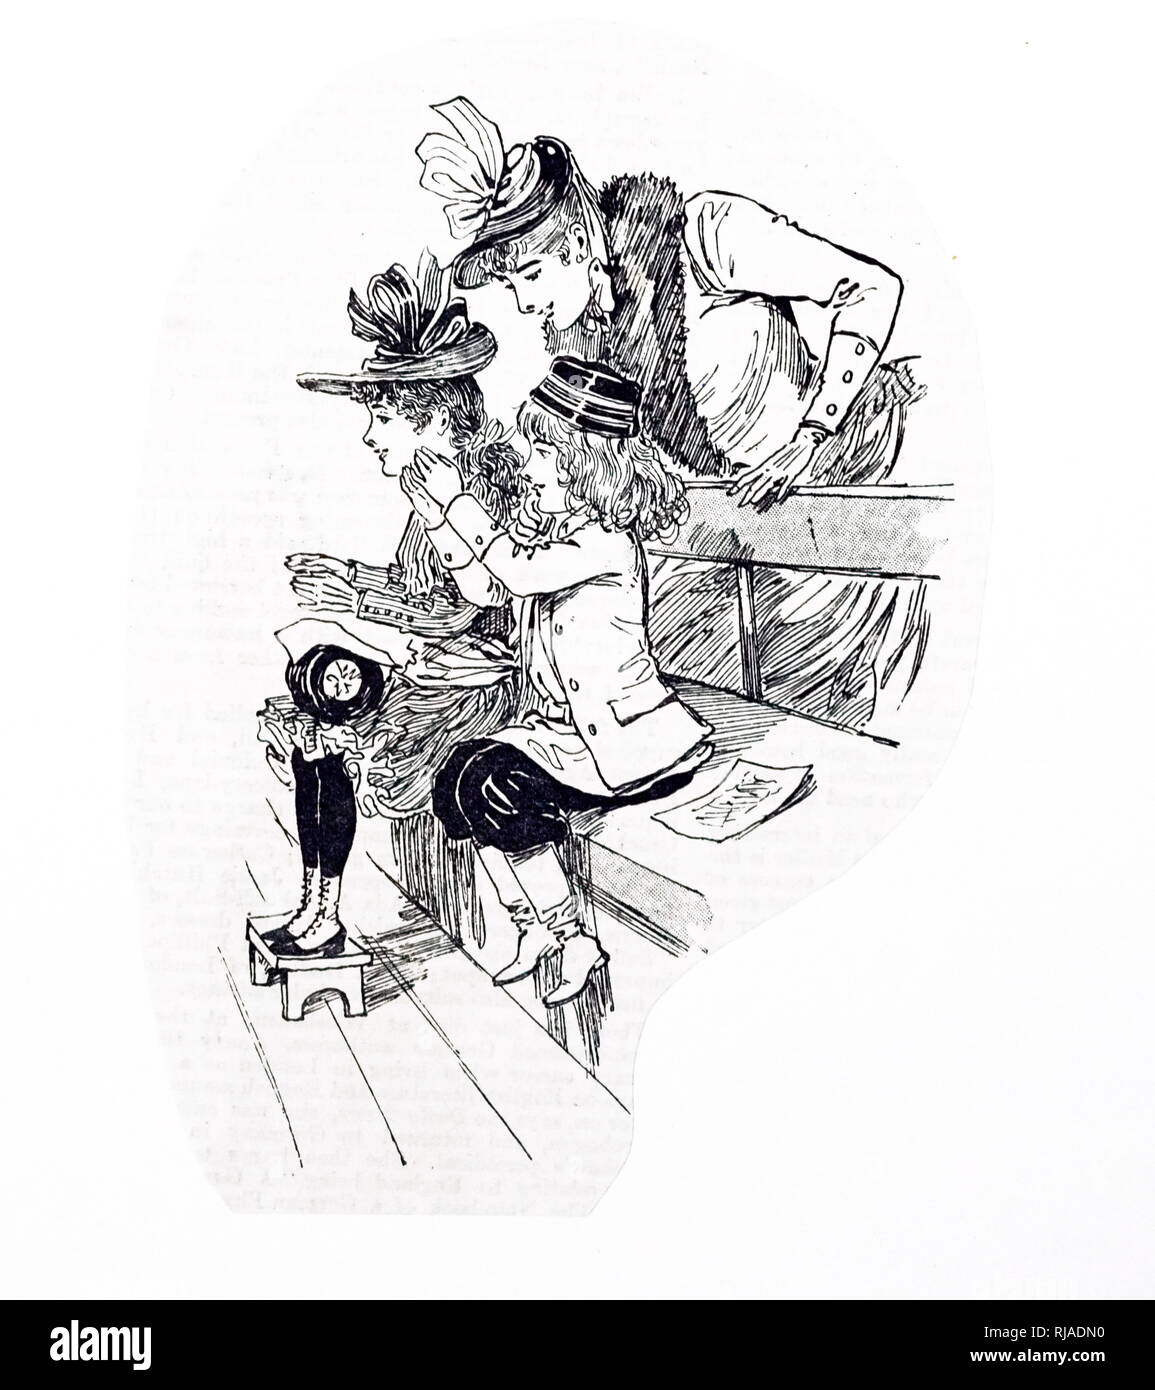 Una incisione raffigurante dei bambini francesi al circo, uno dei tradizionali di intrattenimento nel Natale. Illustrato da Ethel Marte (1876-1959) un americano woodblock print artist e libro per bambini illustrator. Datata del XIX secolo Foto Stock